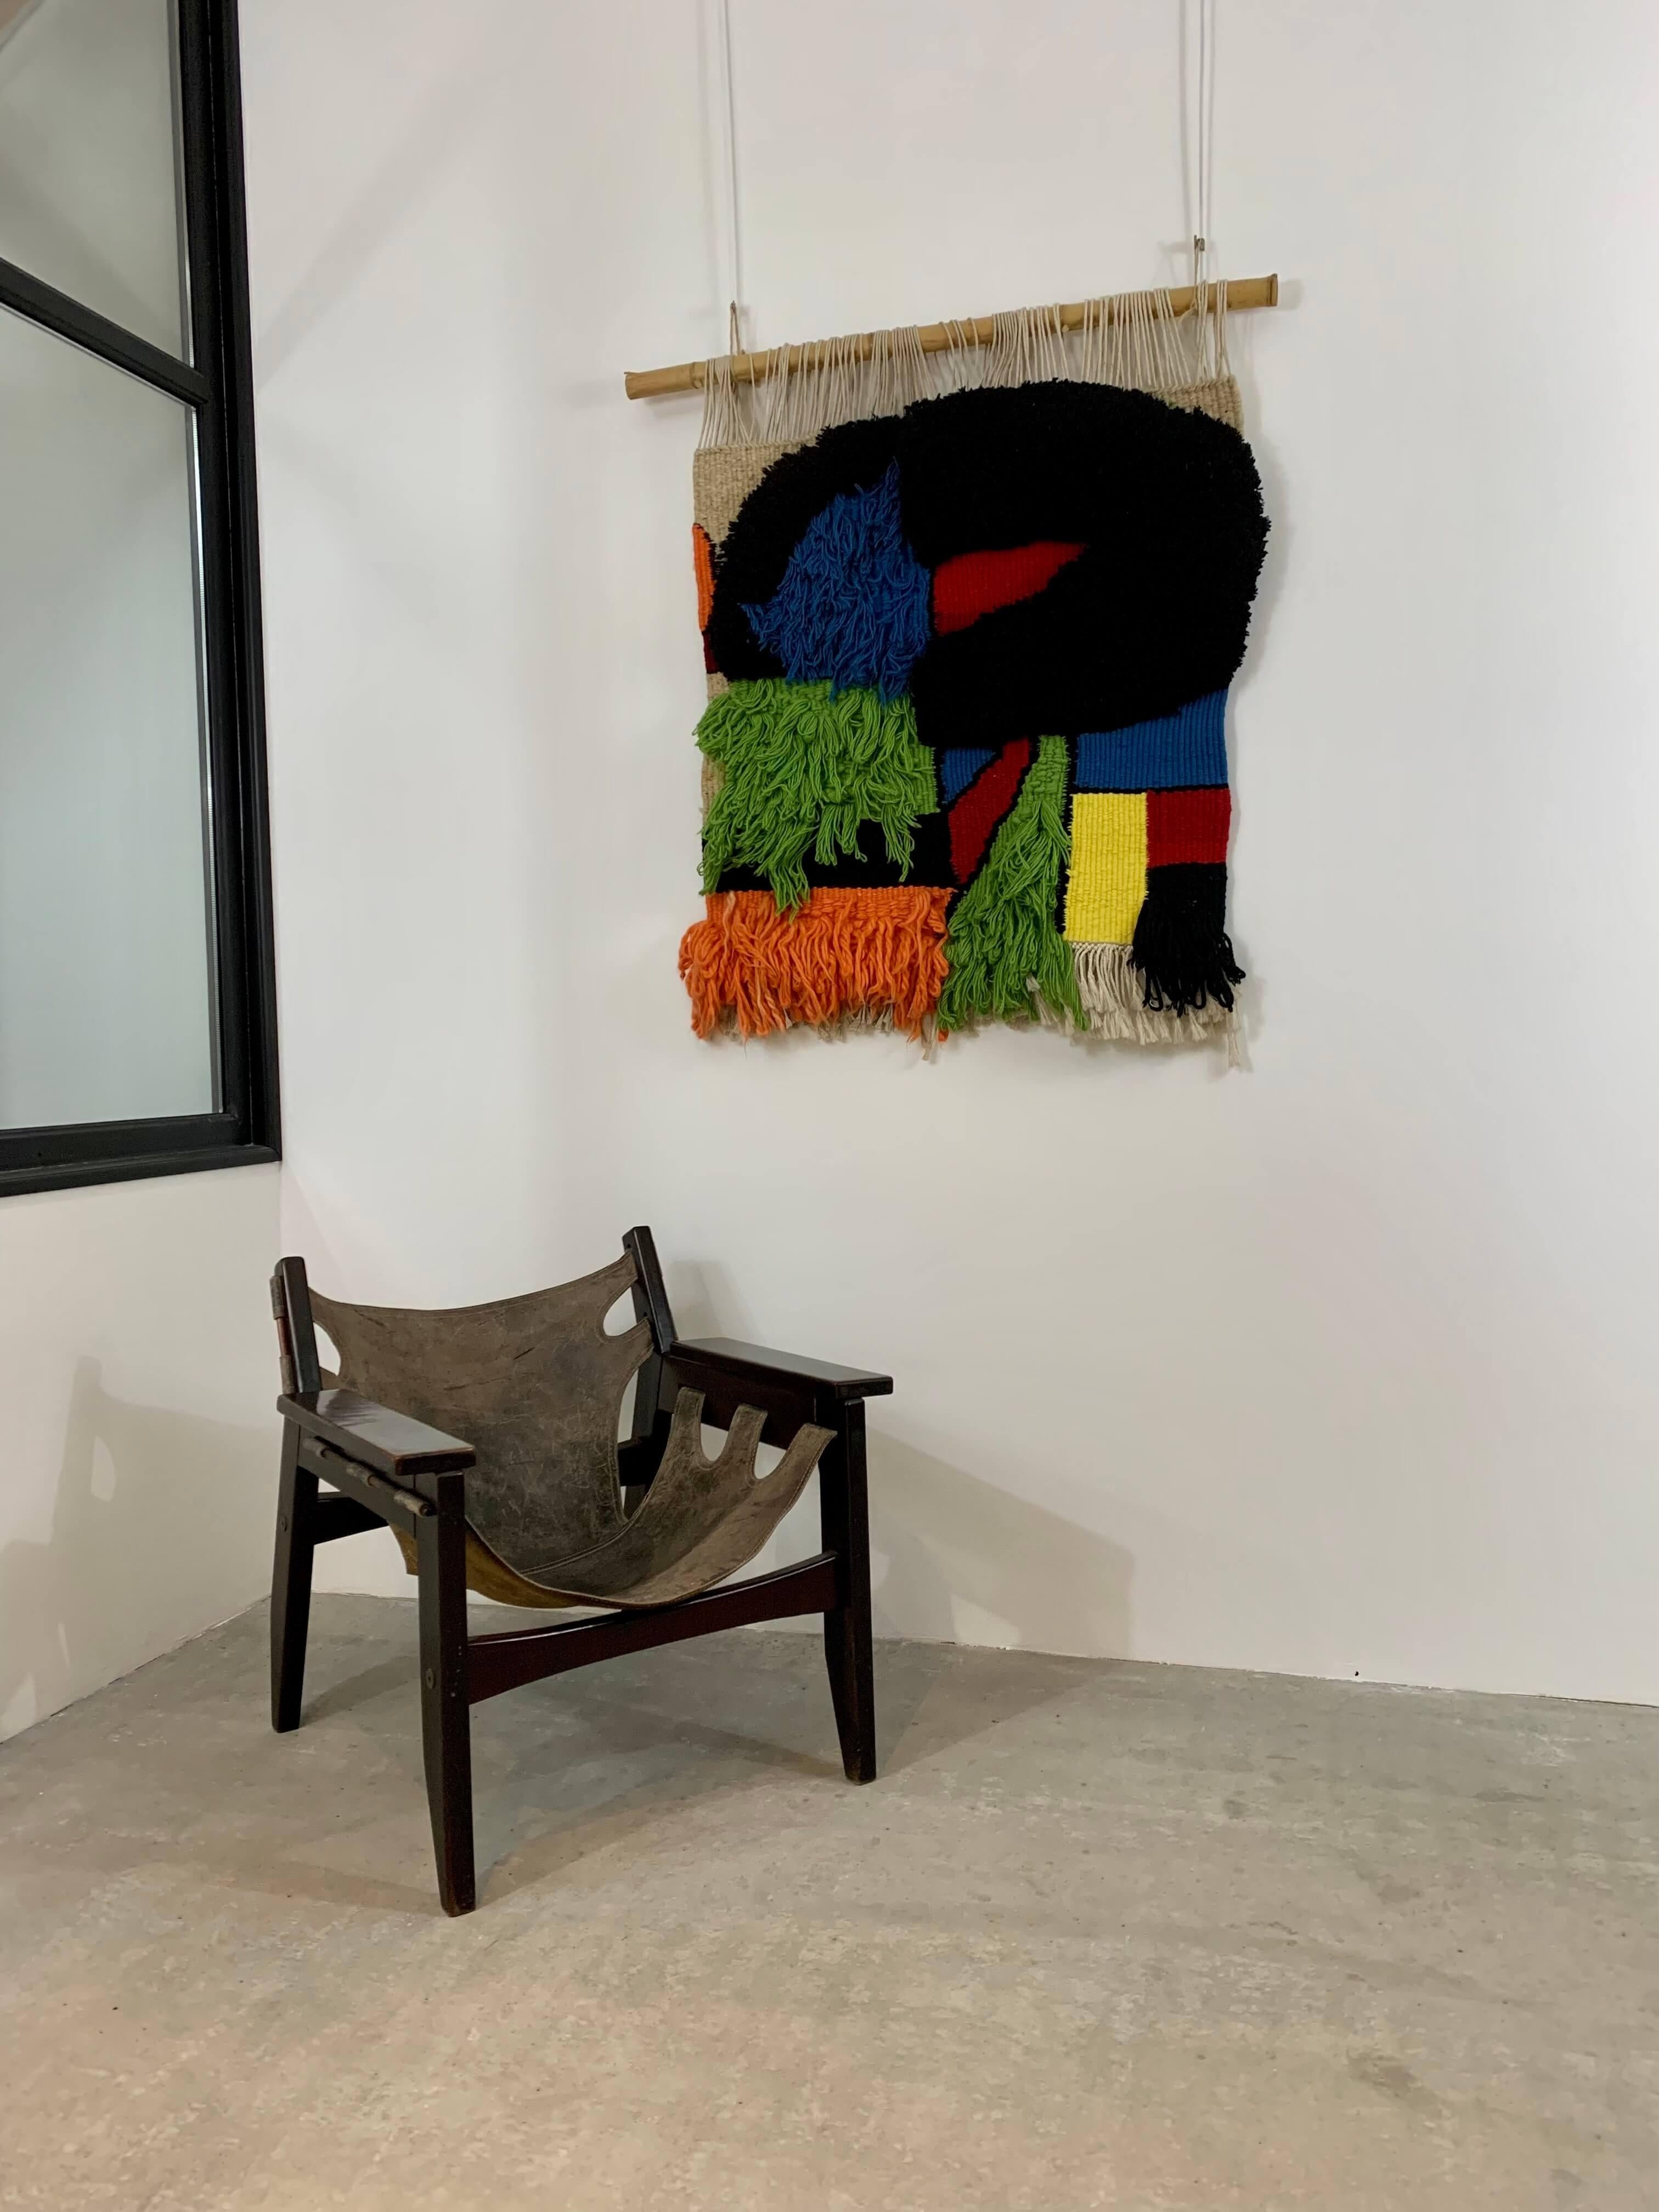 Tapisserie murale artistique tridimensionnelle en très bon état.
Art abstrait avec les formes et les couleurs bien caractéristiques de Joan Miro.

Pièce unique 
Espagne, ca. 1970